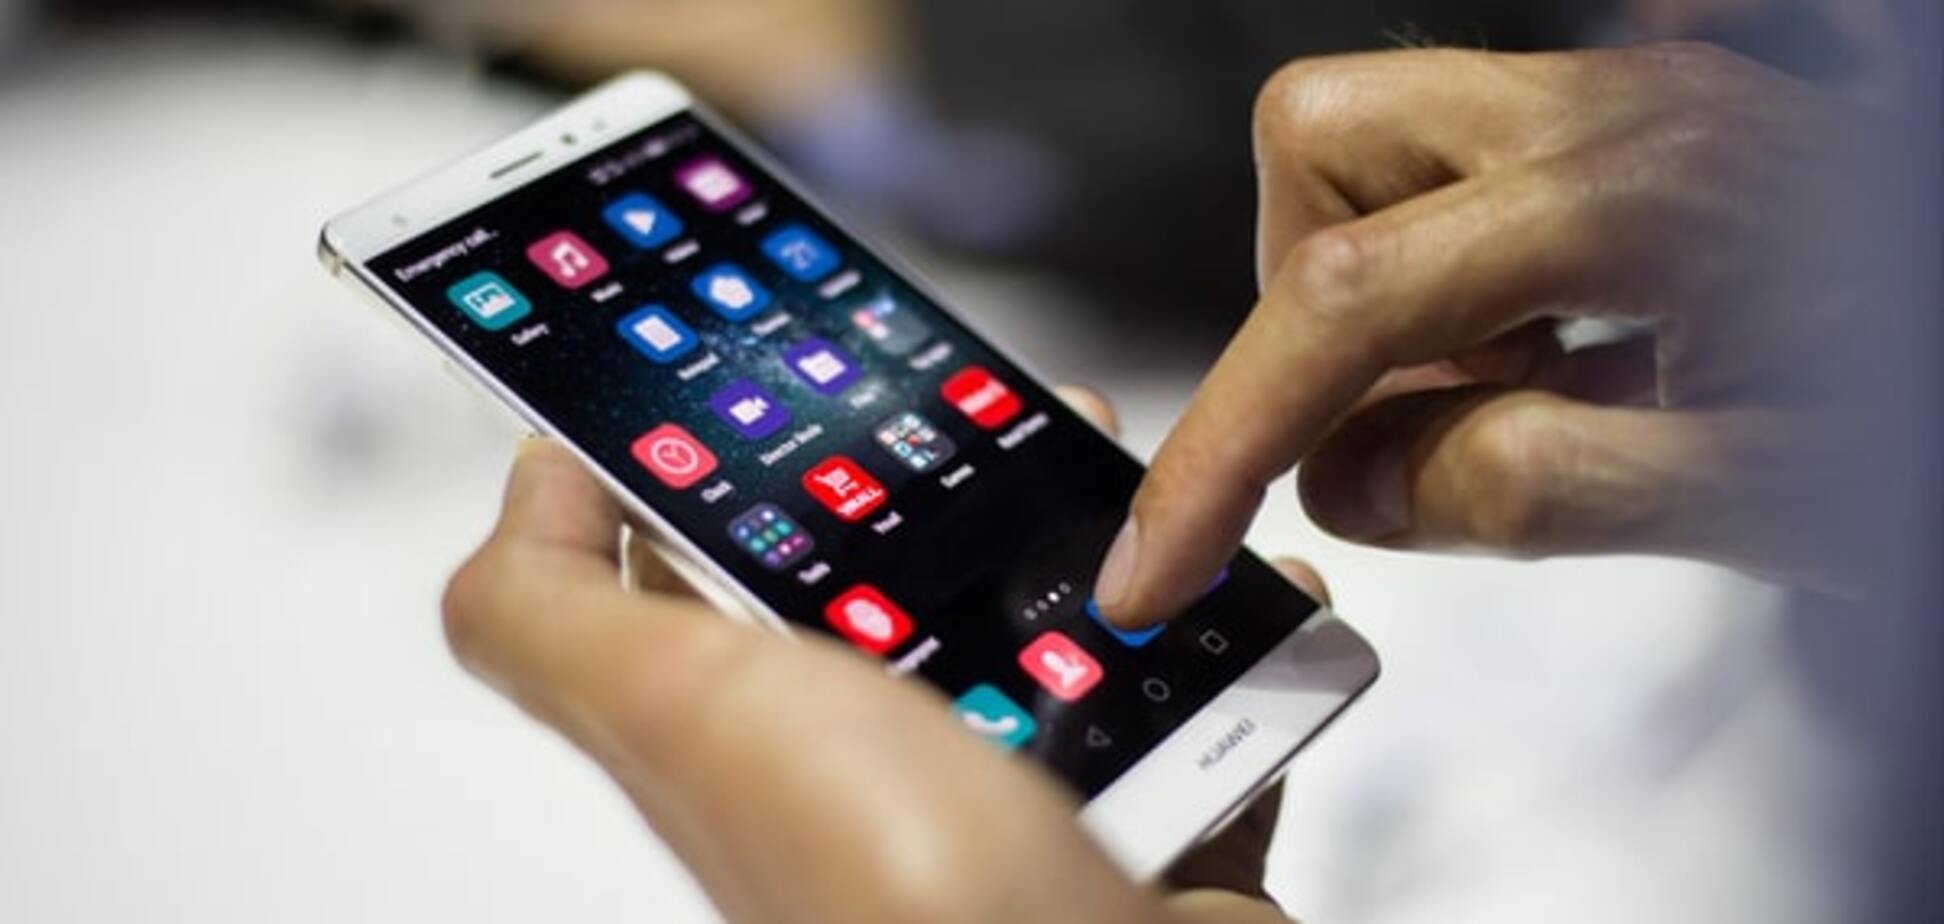 Експерти повідомили, якими будуть смартфони в 2016 році: топ-5 змін